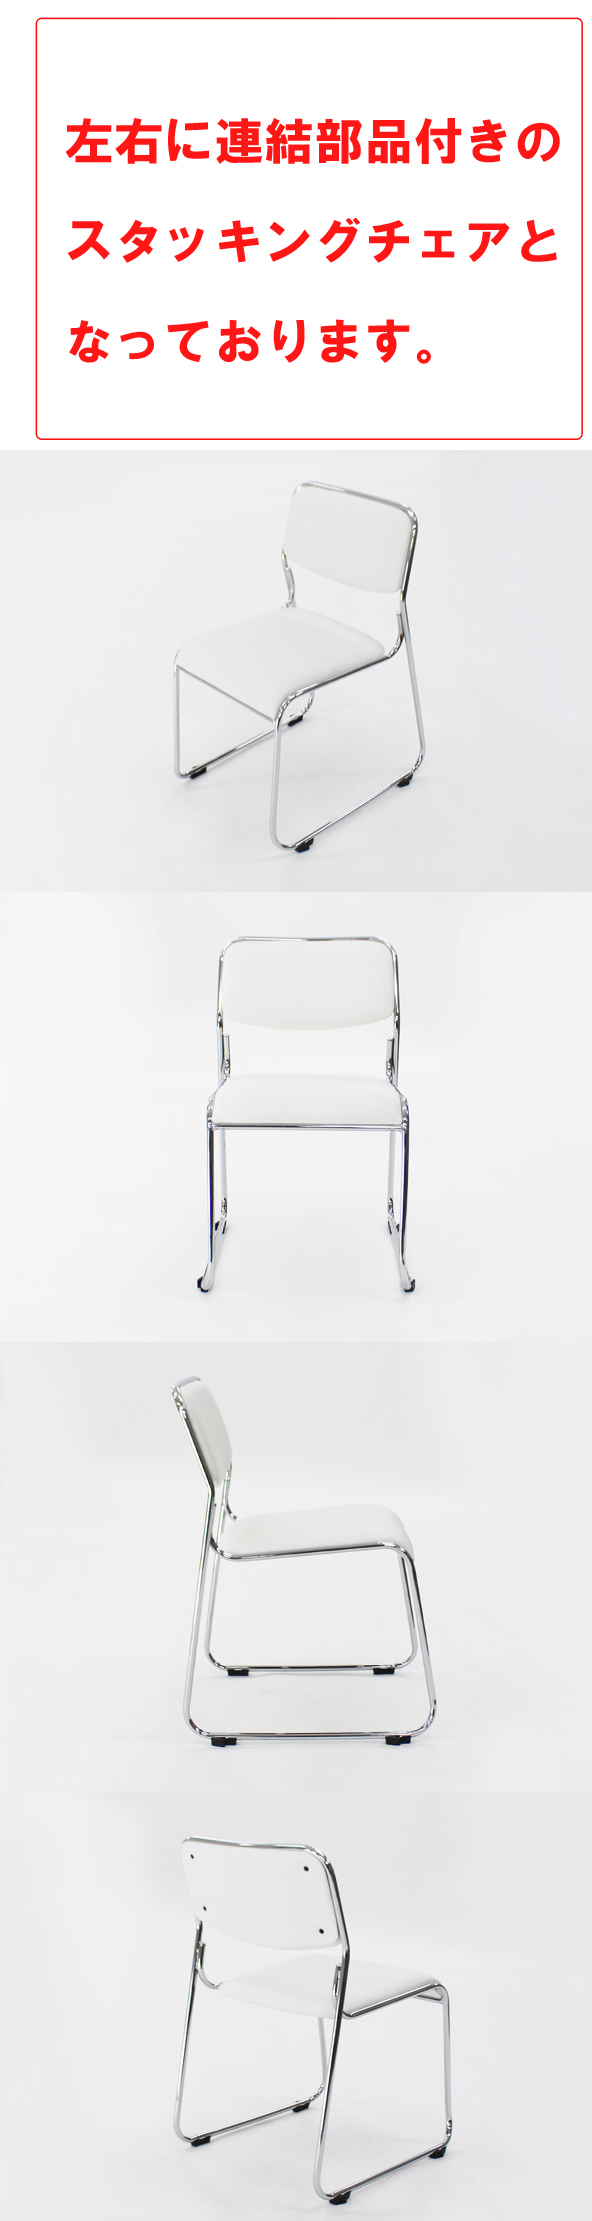 【好評爆買い】送料無料 連結可能 スタッキングチェア 4脚セット ホワイト ミーティングチェア パイプ椅子 会議イス 会議椅子 パイプチェア 横連結可能 パイプイス